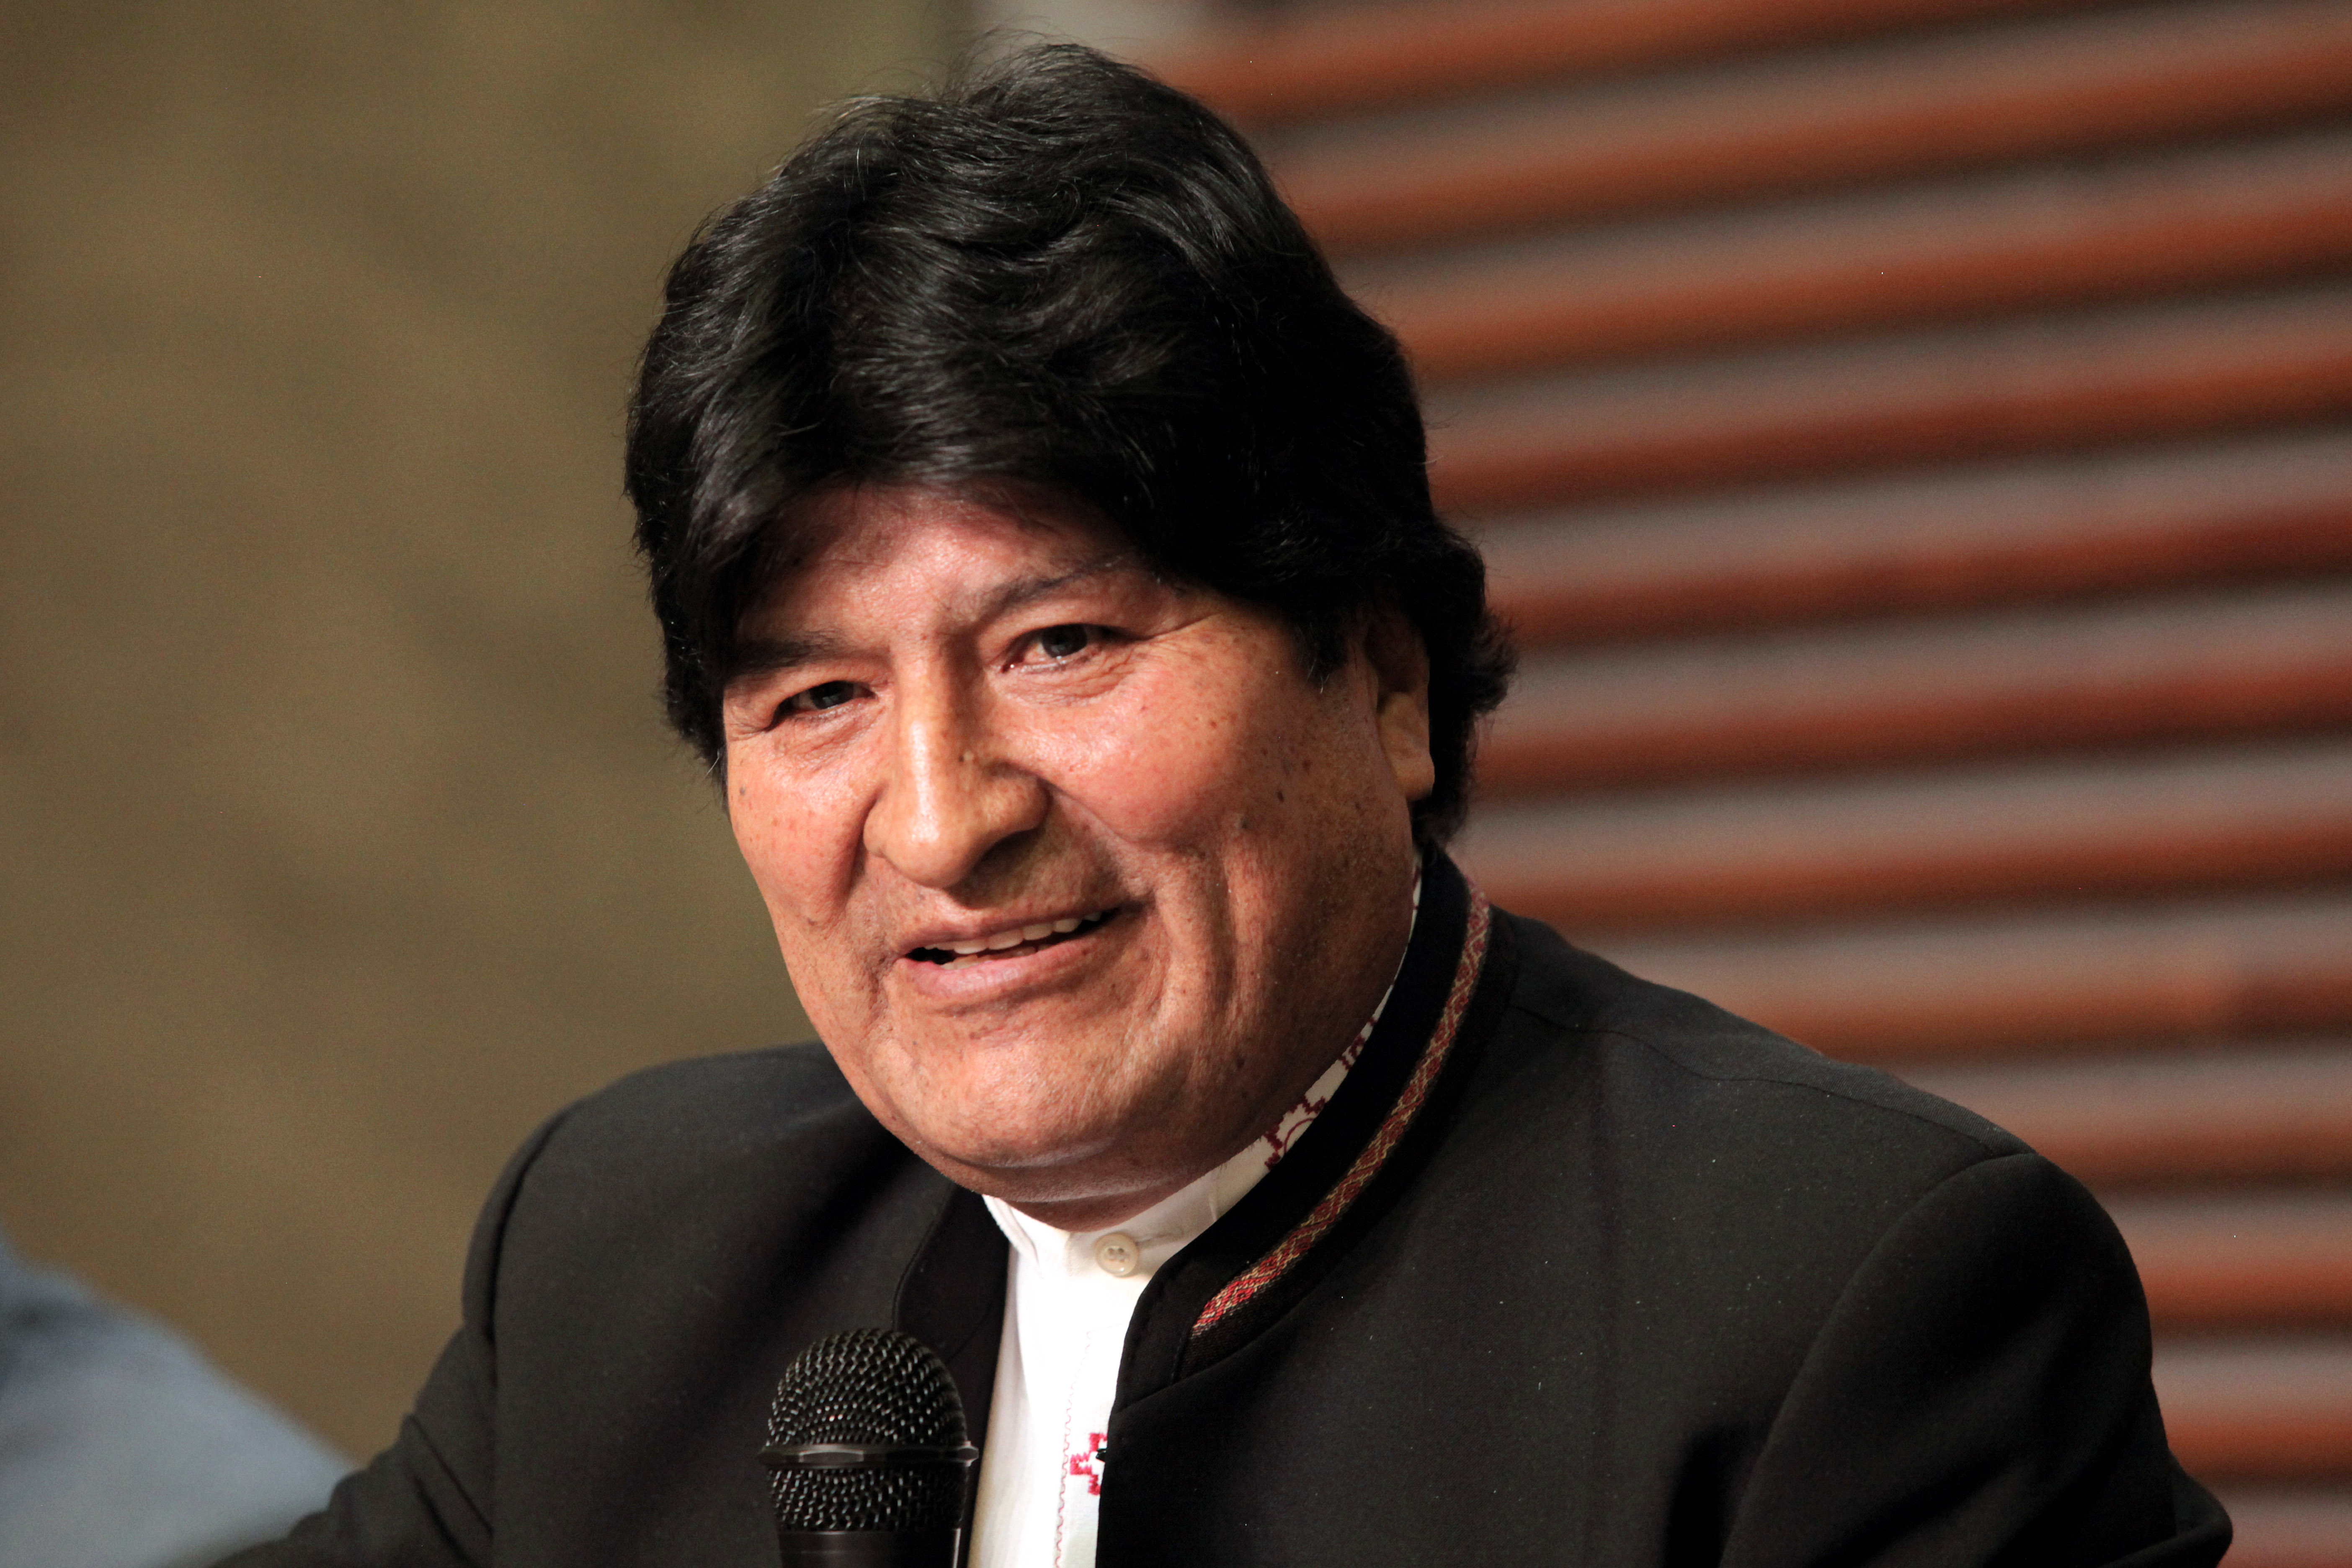 El ex presidente de Bolivia Evo Morales dejó el cargo en noviembre entre denuncias de fraude y presiones militares (Claudio Santisteban/ZUMA Wire/dp / DPA)
